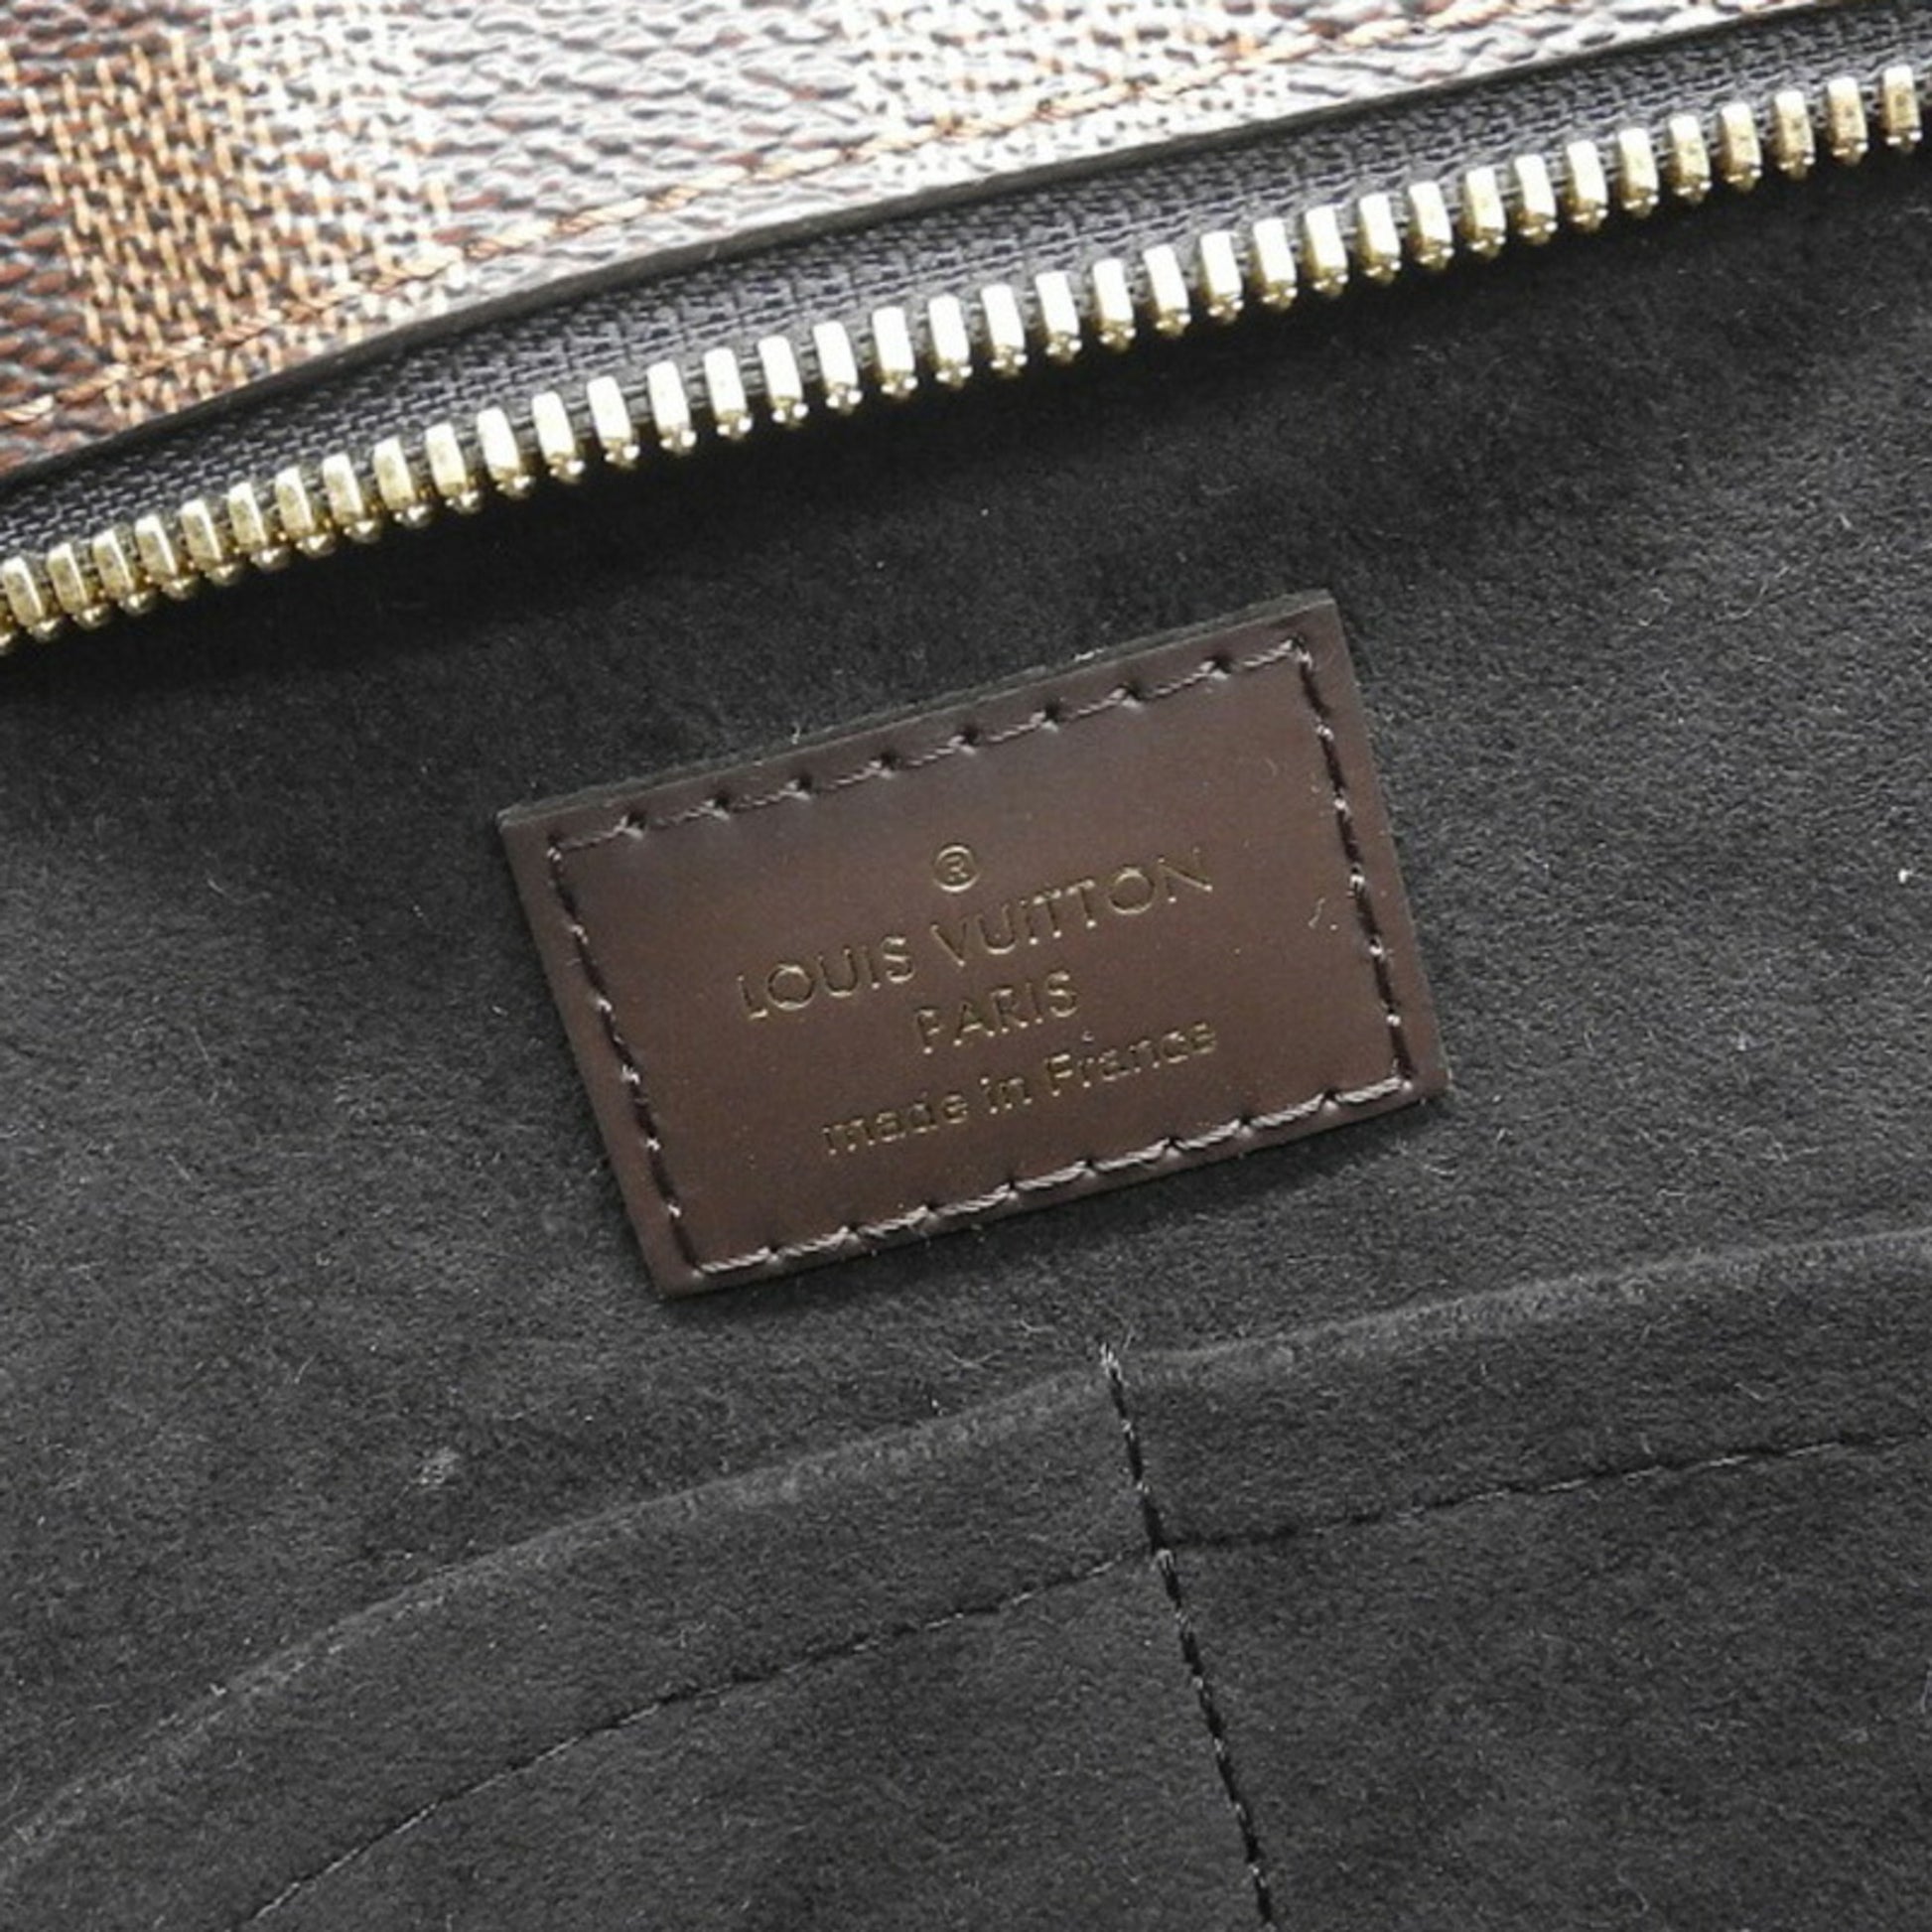 Louis Vuitton Jersey Tote Bag LV N44023 (Black), Women's Fashion